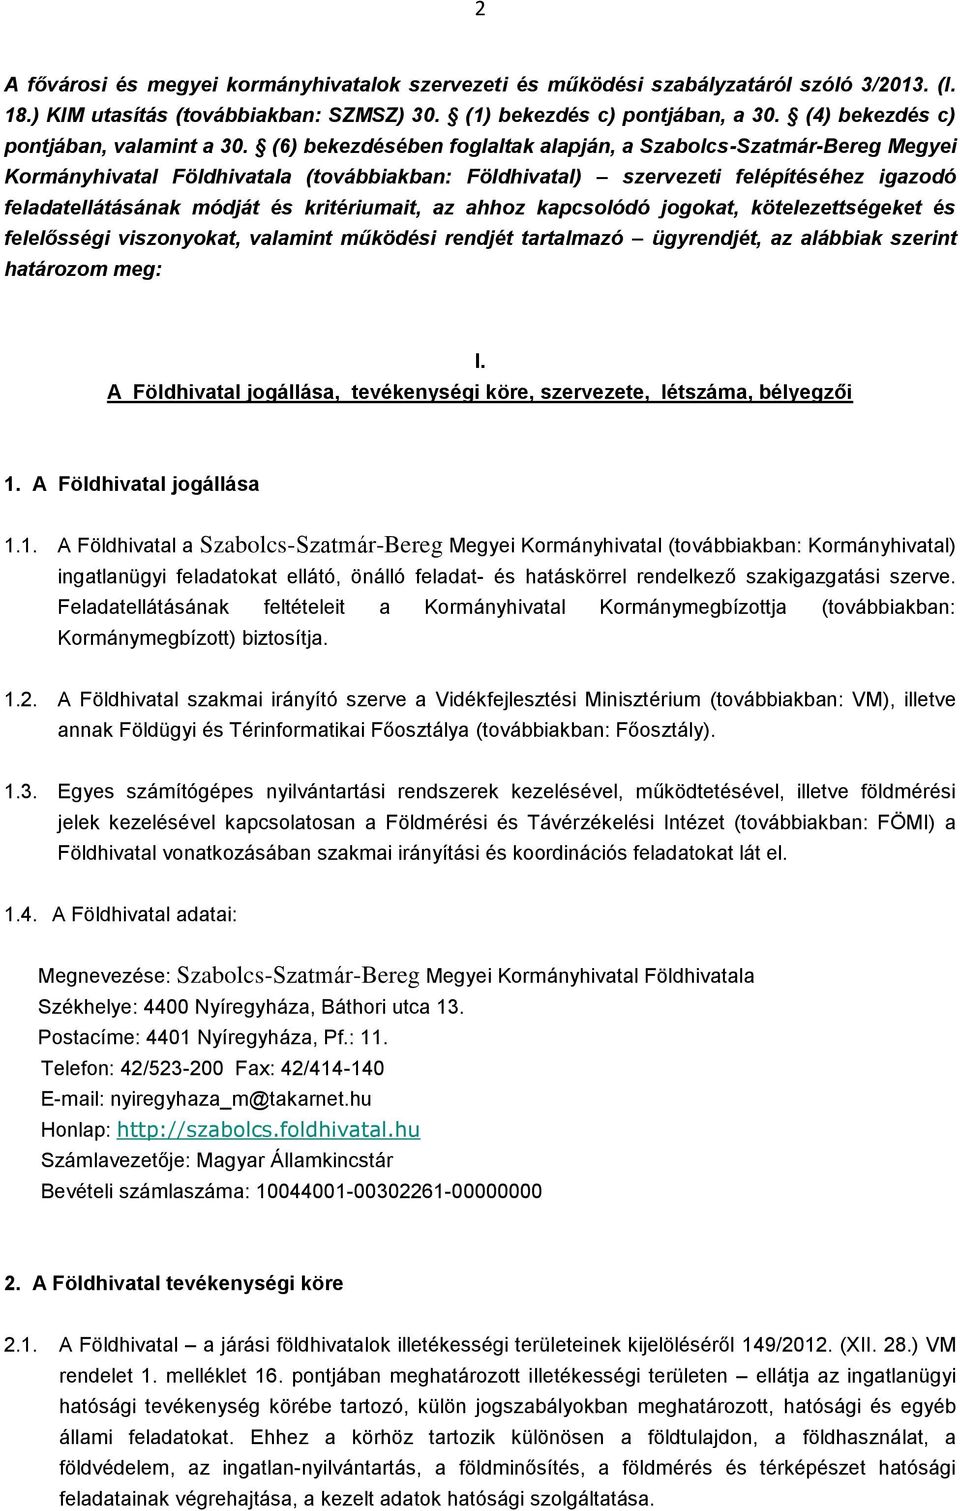 (6) bekezdésében foglaltak alapján, a Szabolcs-Szatmár-Bereg Megyei Kormányhivatal Földhivatala (továbbiakban: Földhivatal) szervezeti felépítéséhez igazodó feladatellátásának módját és kritériumait,